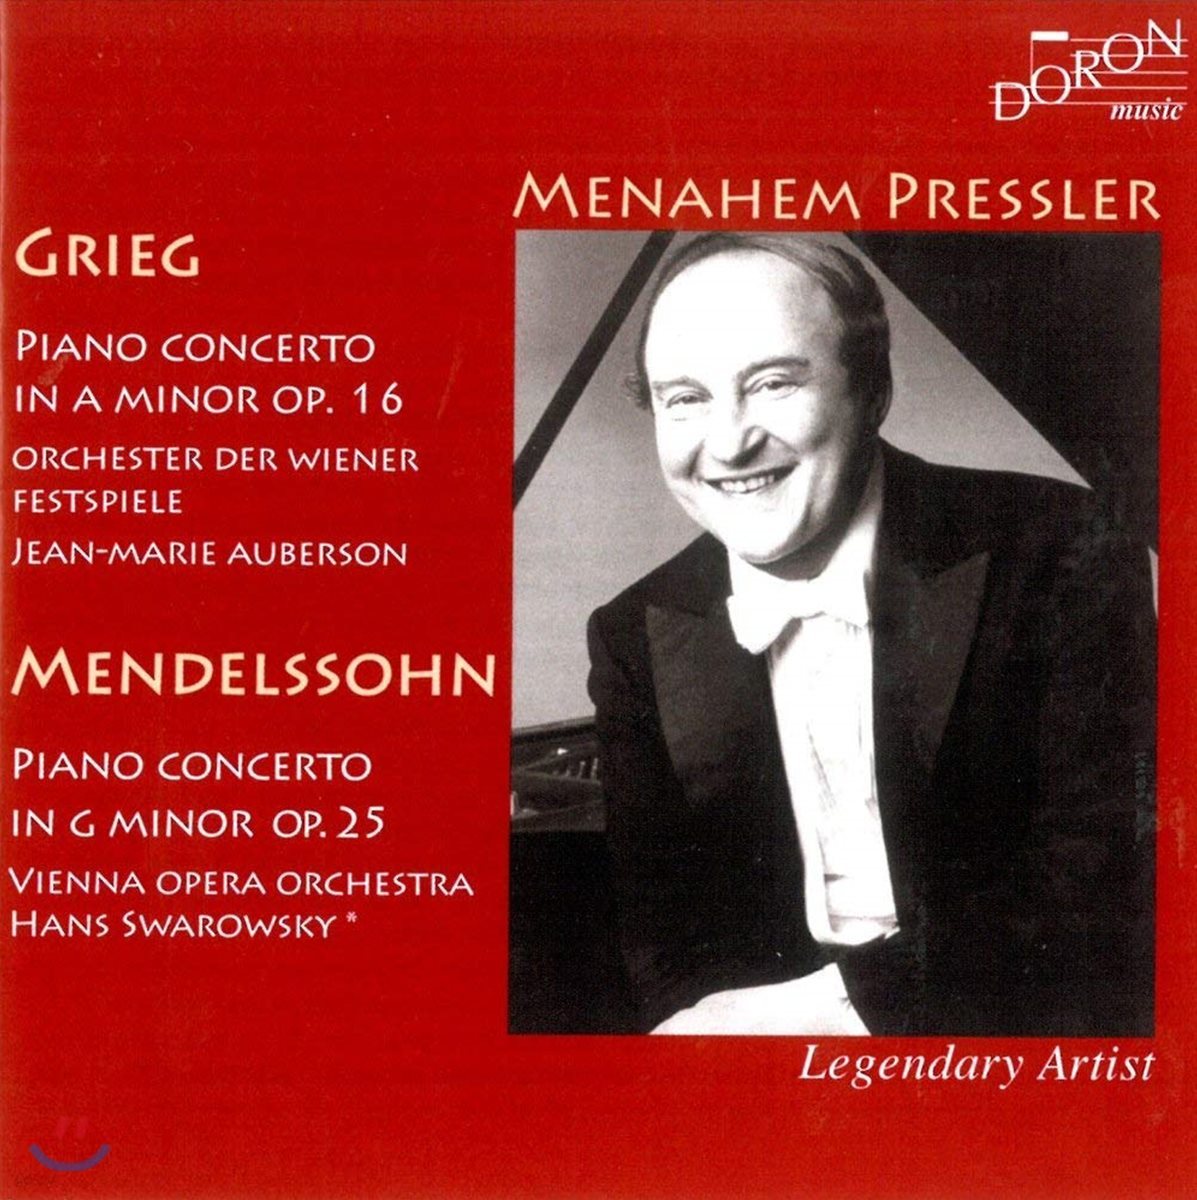 Hans Swarowsky / Menahem Pressler 그리그 / 멘델스존 : 피아노 협주곡 (Grieg: Piano Concerto in A minor, Op. 16 / Mendelssohn: Piano Concerto No. 1 in G minor, Op. 25)